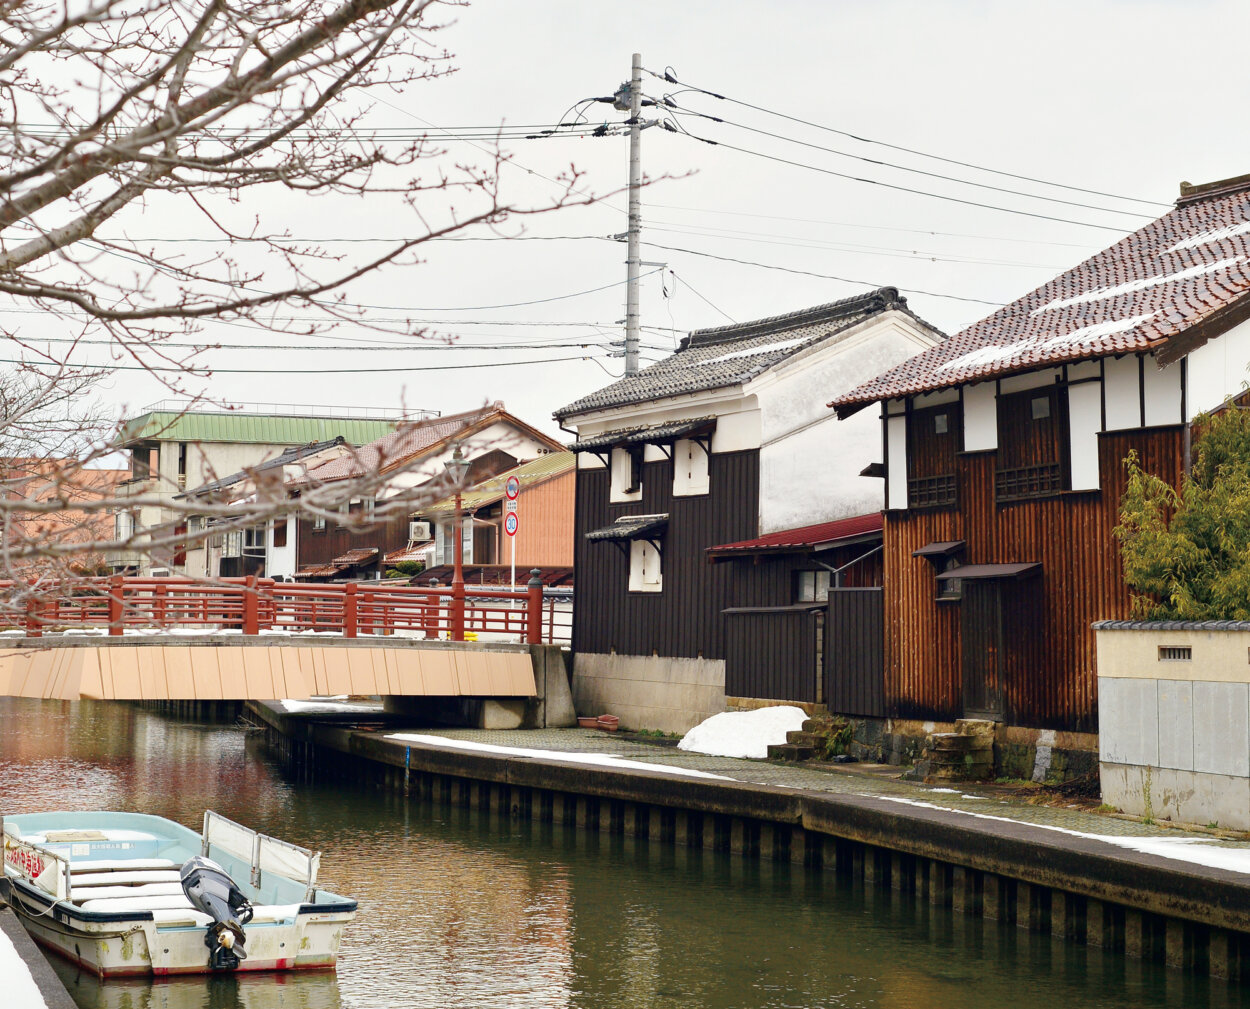 城下町の面影をとどめる加茂川沿いの白壁土蔵。土蔵の石段は川から荷を運ぶためのもので、あたりには趣ある桜並木が続いている